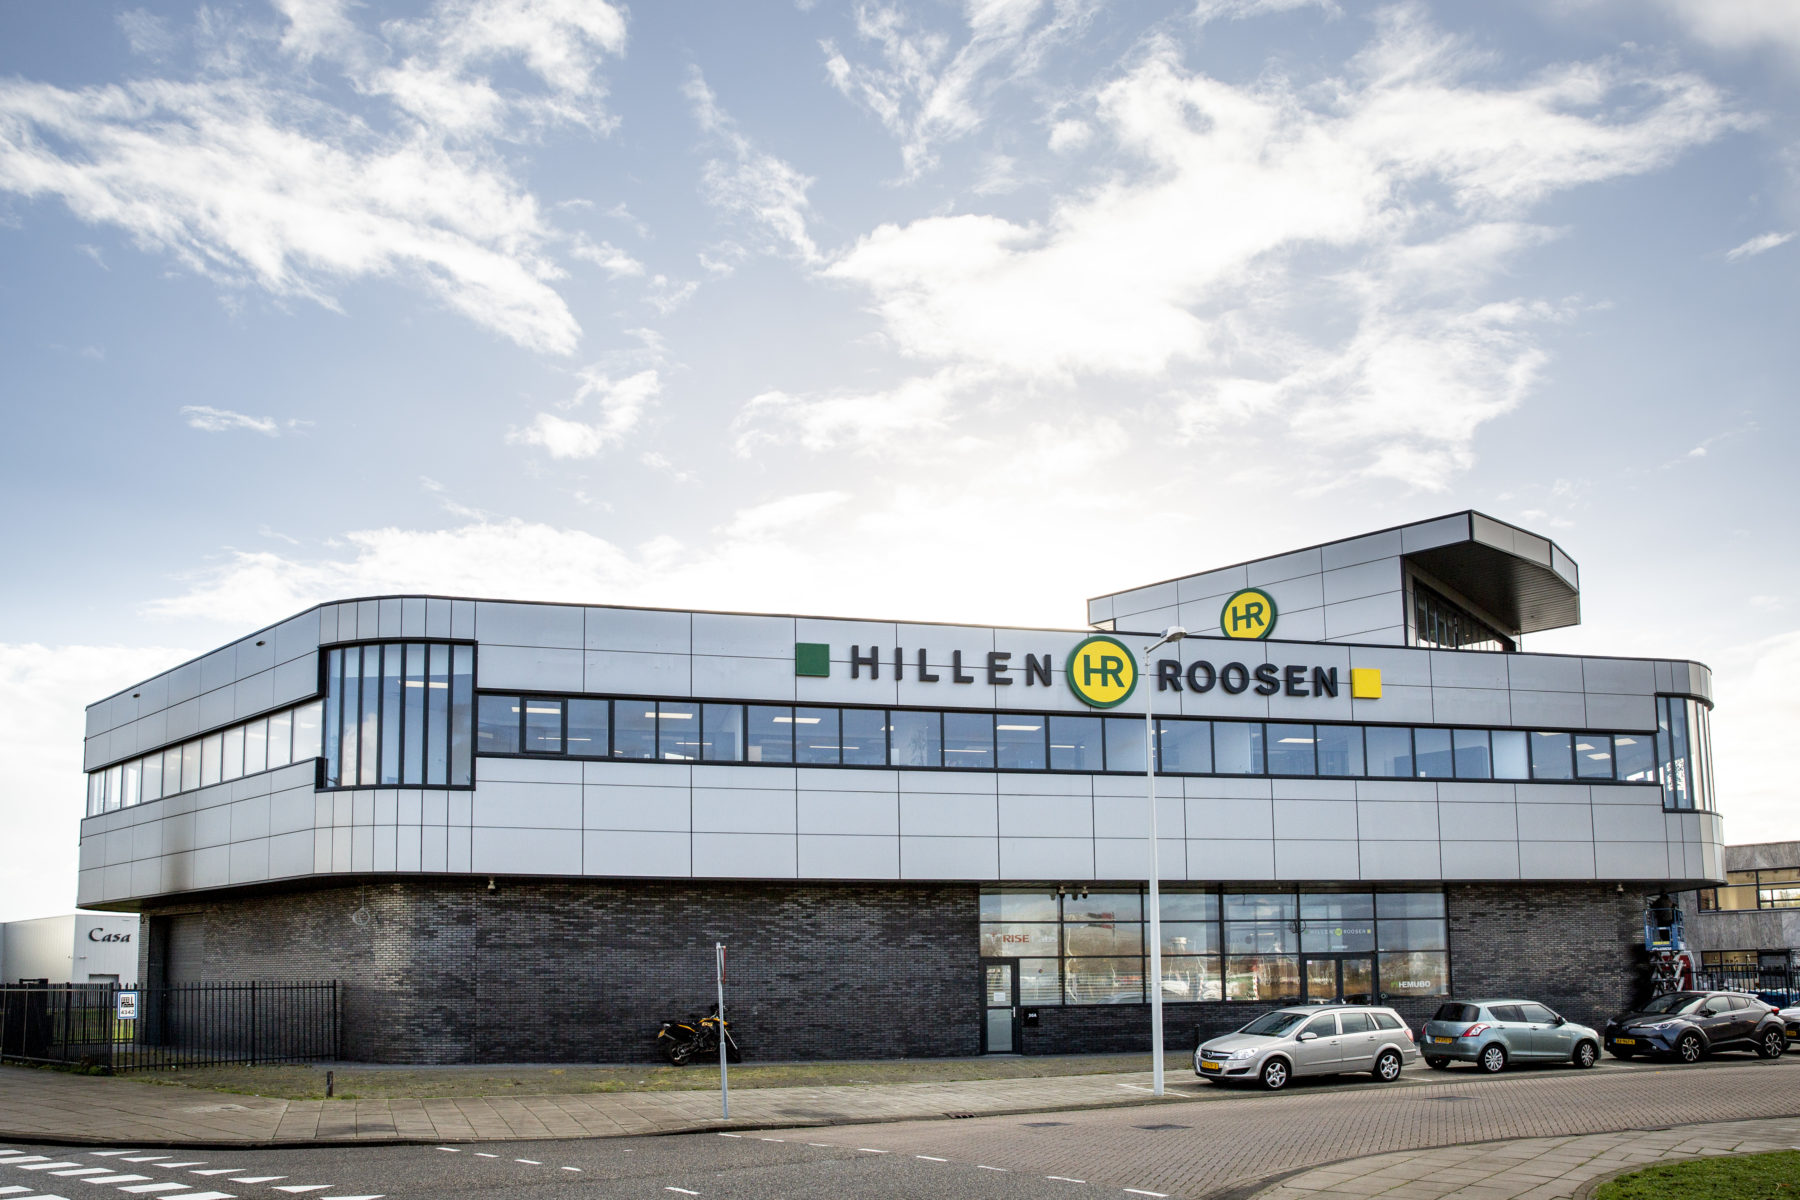 De voormalige tegelhandel en sanitairshowroom aan de Benit 30 is medio 2018 door Hillen & Roosen aangekocht, ontwikkeld en verbouwd tot haar nieuwe hoofdkantoor.